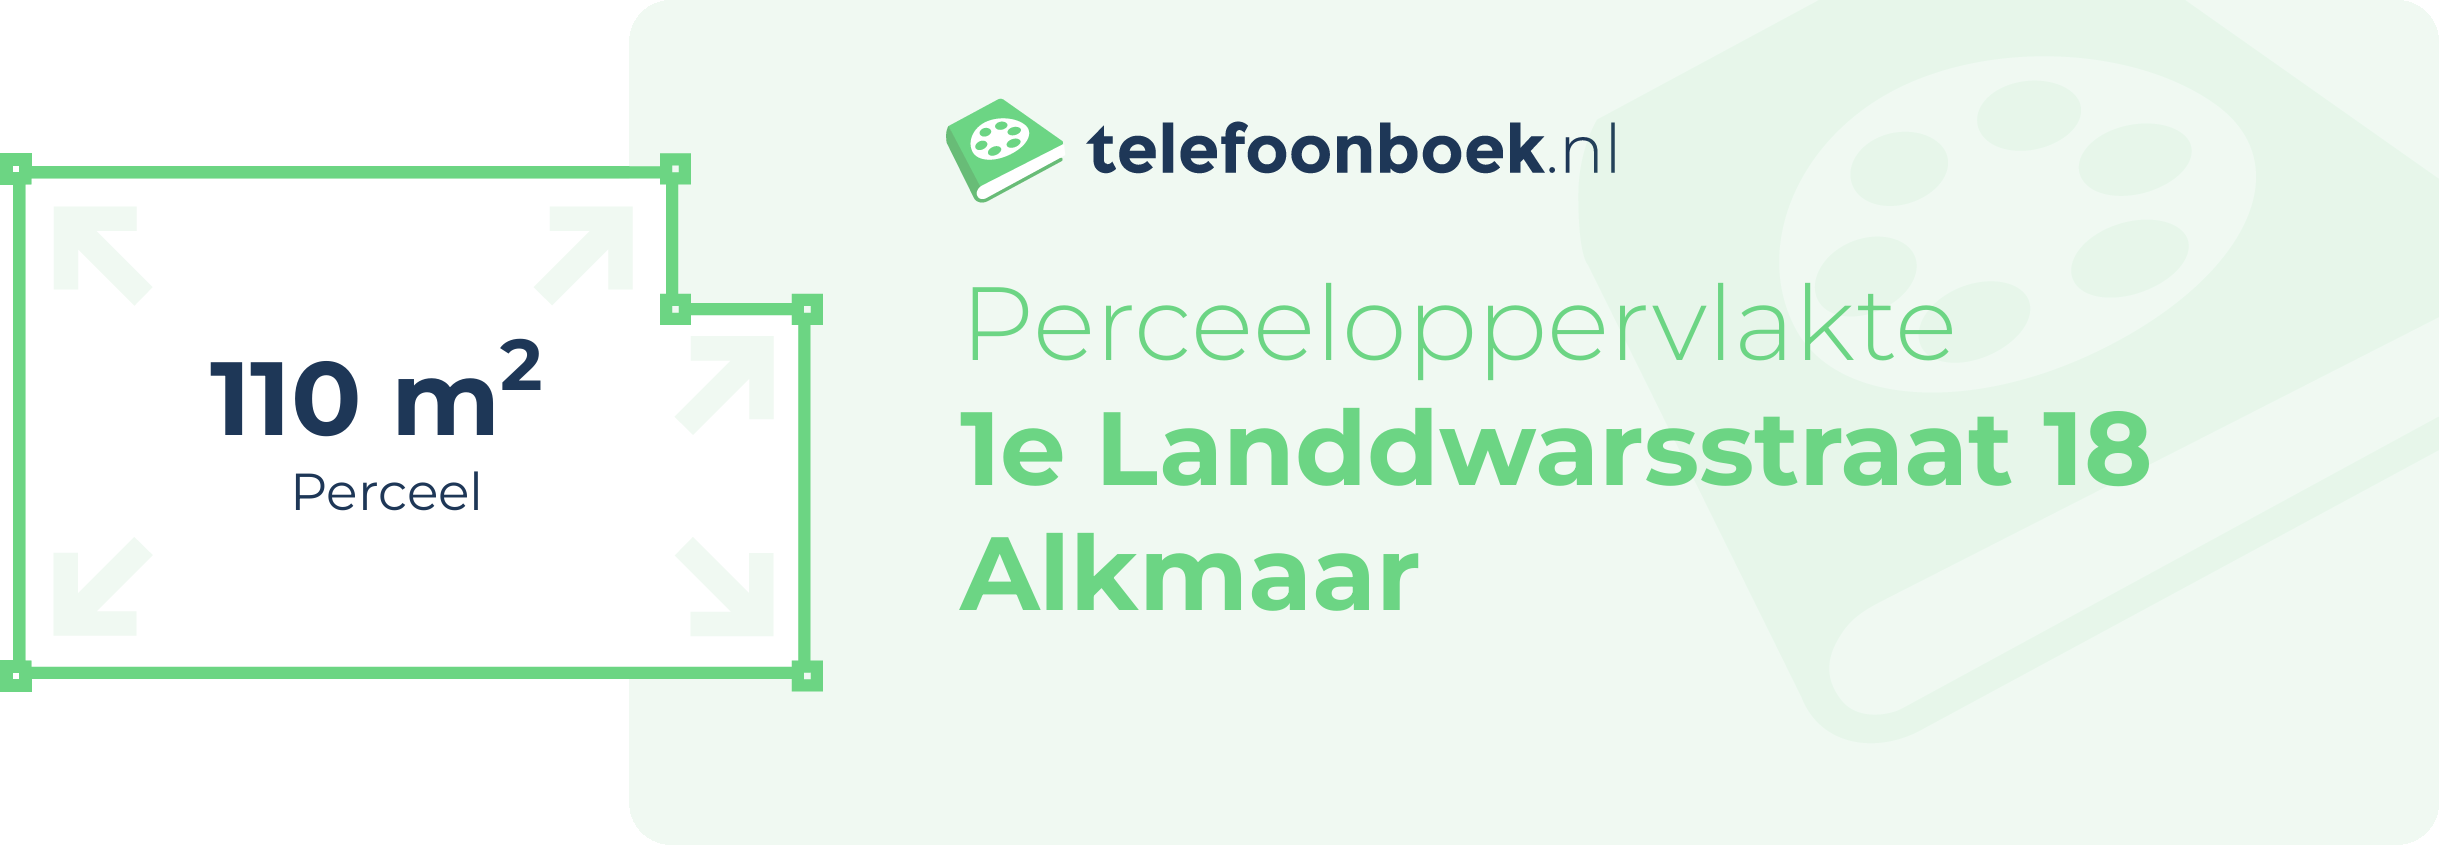 Perceeloppervlakte 1e Landdwarsstraat 18 Alkmaar